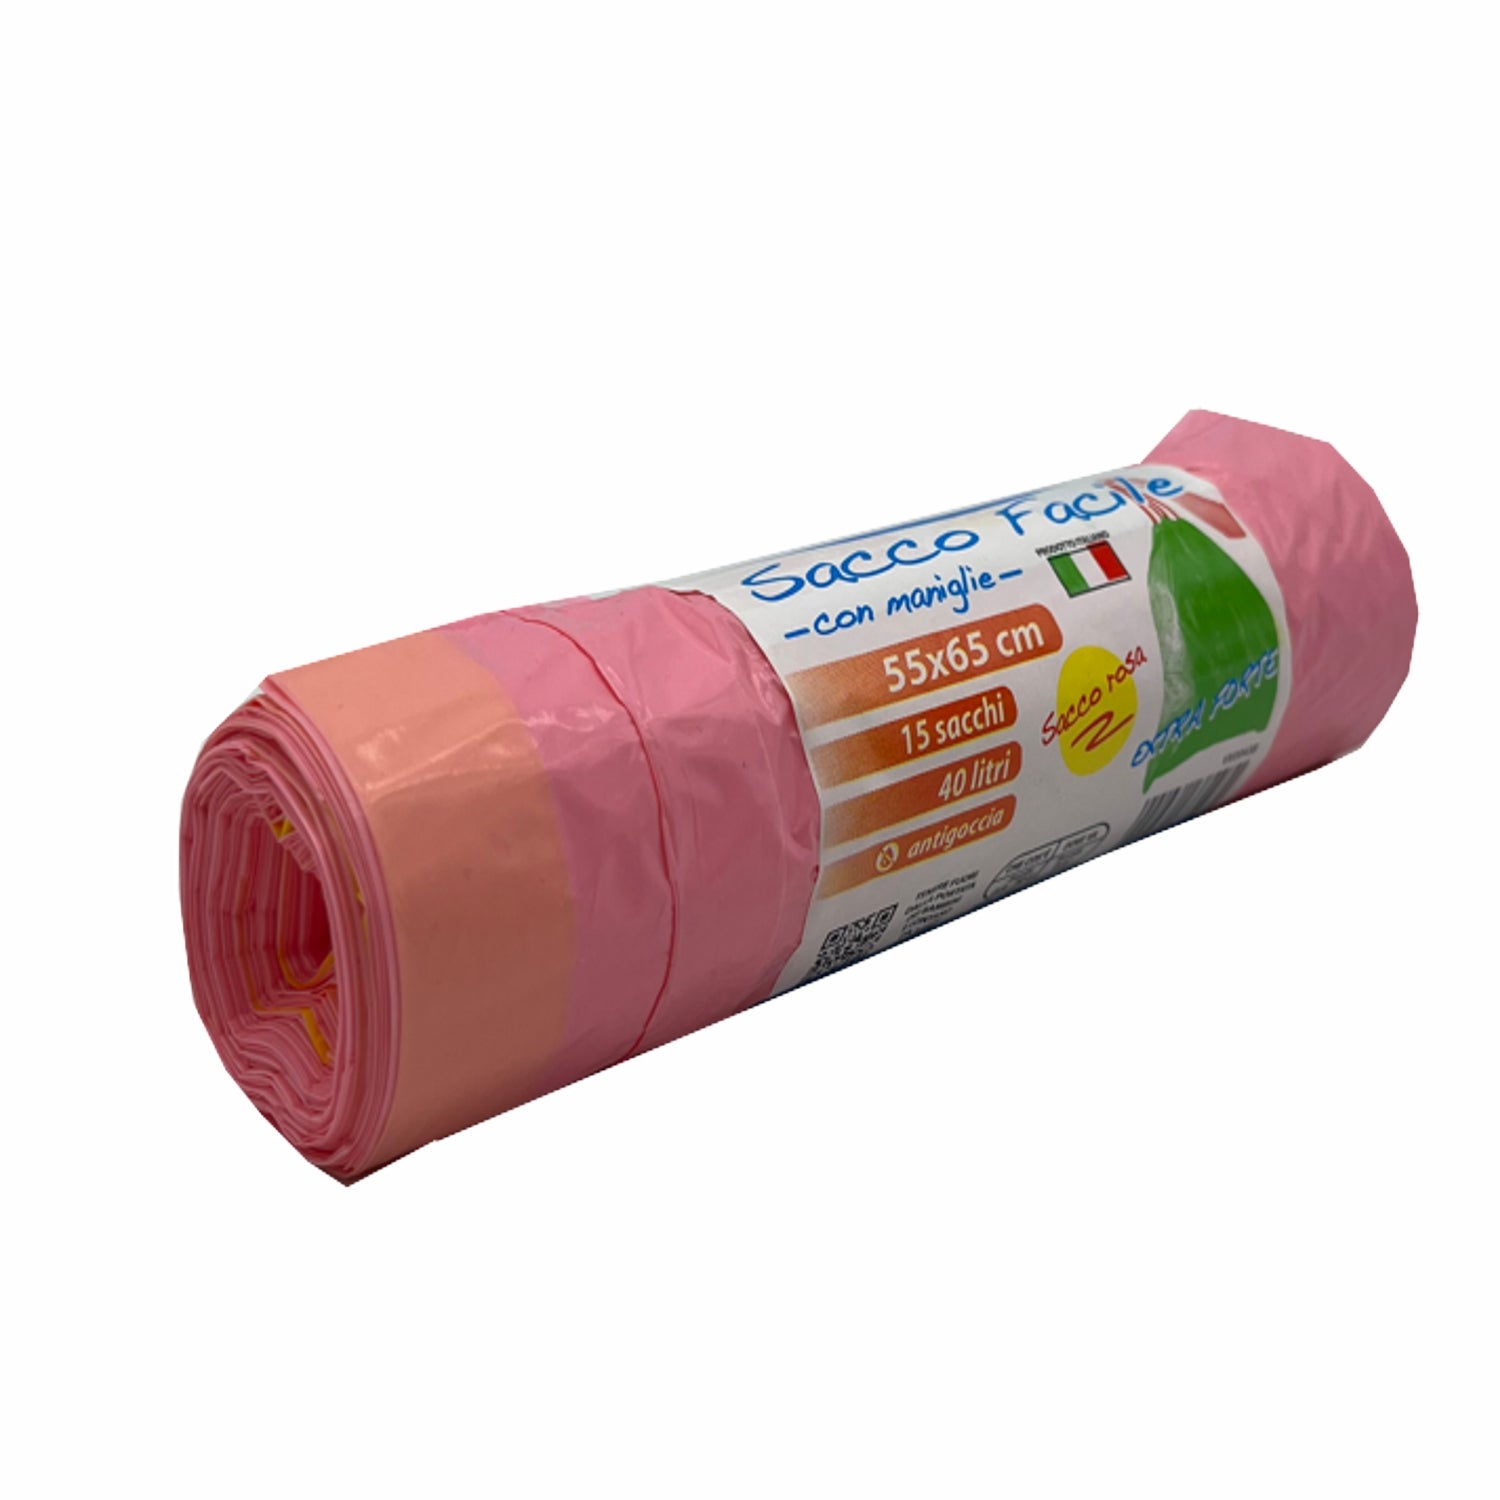 Sacco spazzatura cm.55x65 colore rosa peso gr.12 profumato pz.15 litri